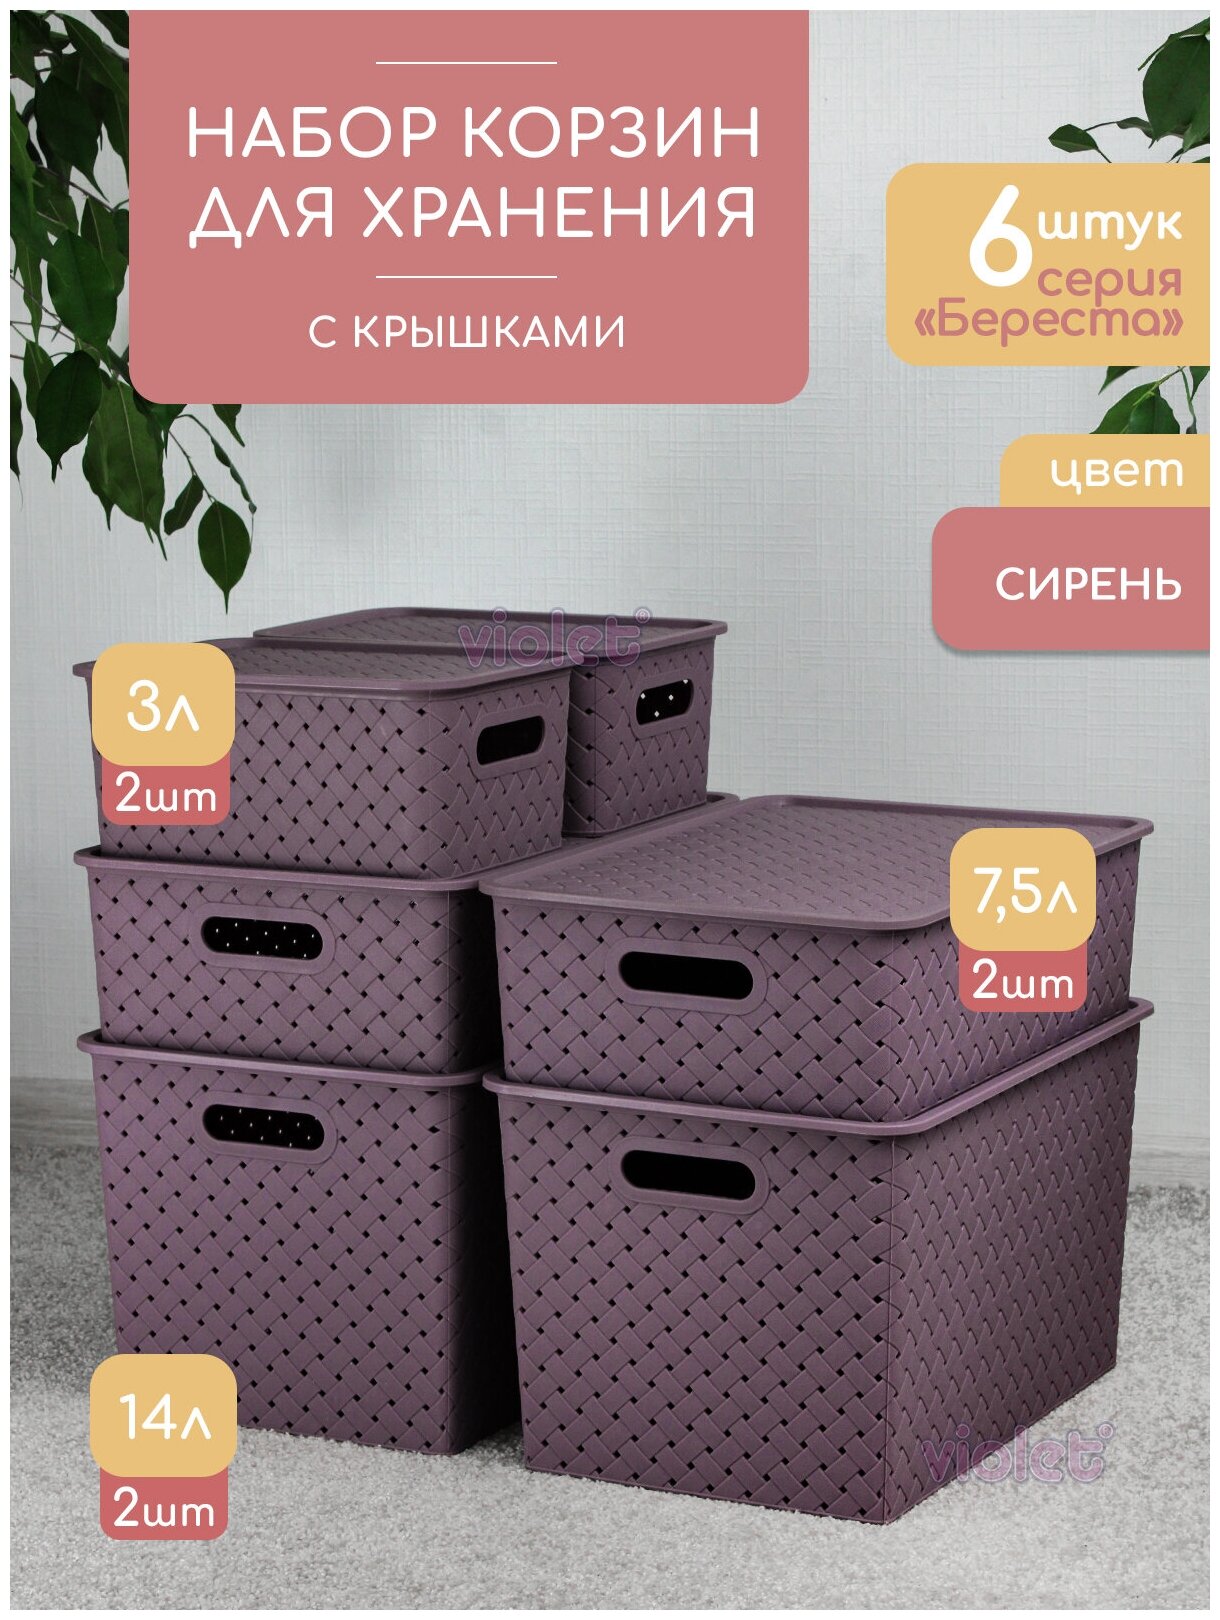 Набор из 6 корзин для хранения Береста 14л - 2 шт, 7,5л - 2 шт, 3л - 2 шт / контейнер / хозяйственная коробка, цвет сирень